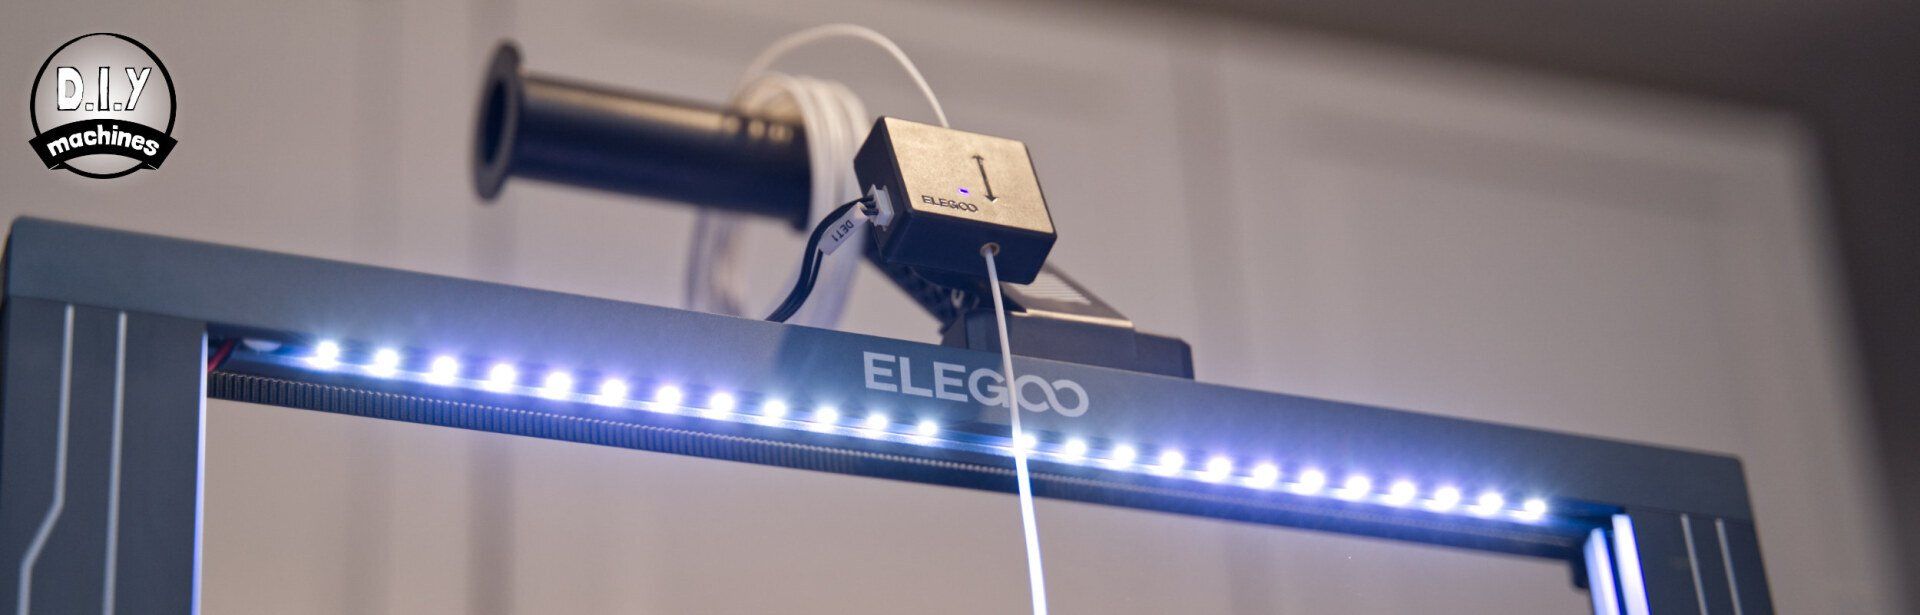 Elegoo Neptune 3 Pro LED Lighting